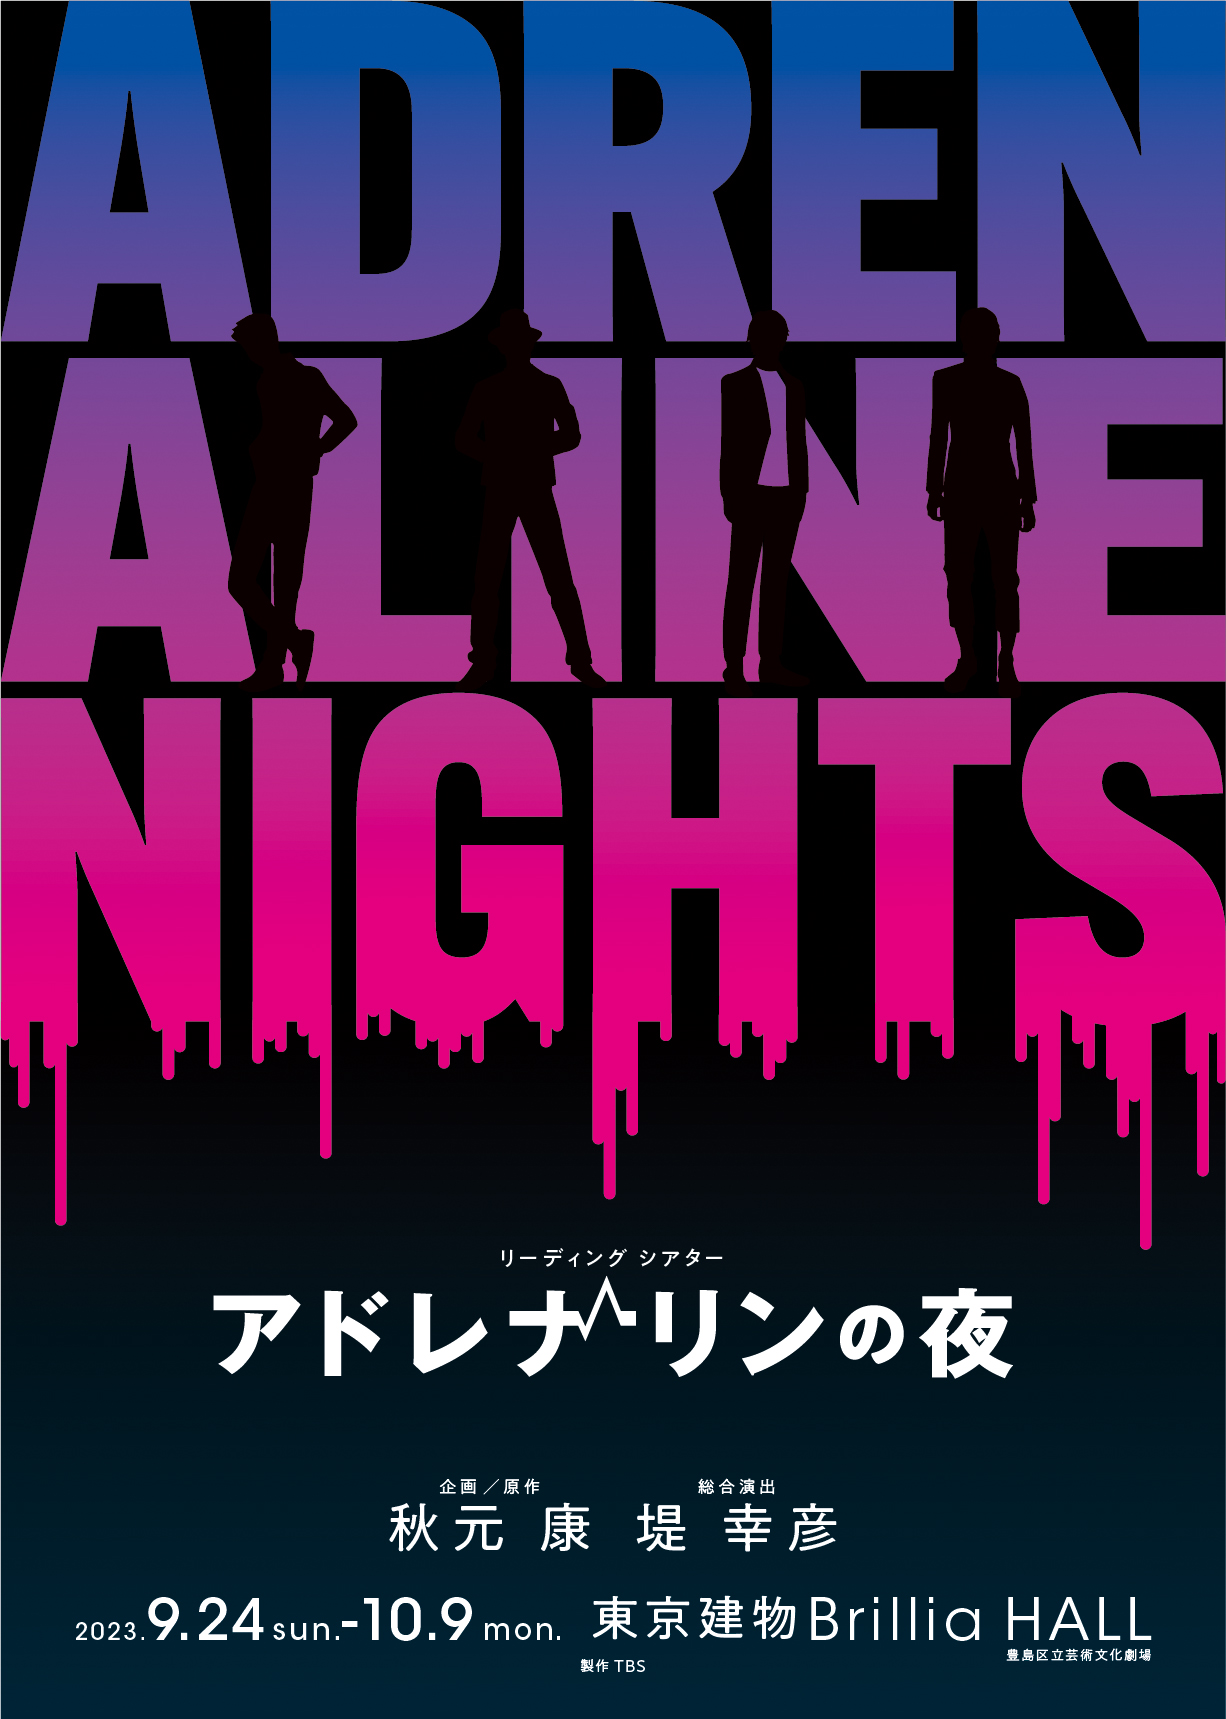 リーディングシアター「アドレナリンの夜」阿部顕嵐ら出演者コメント到着 イメージ画像